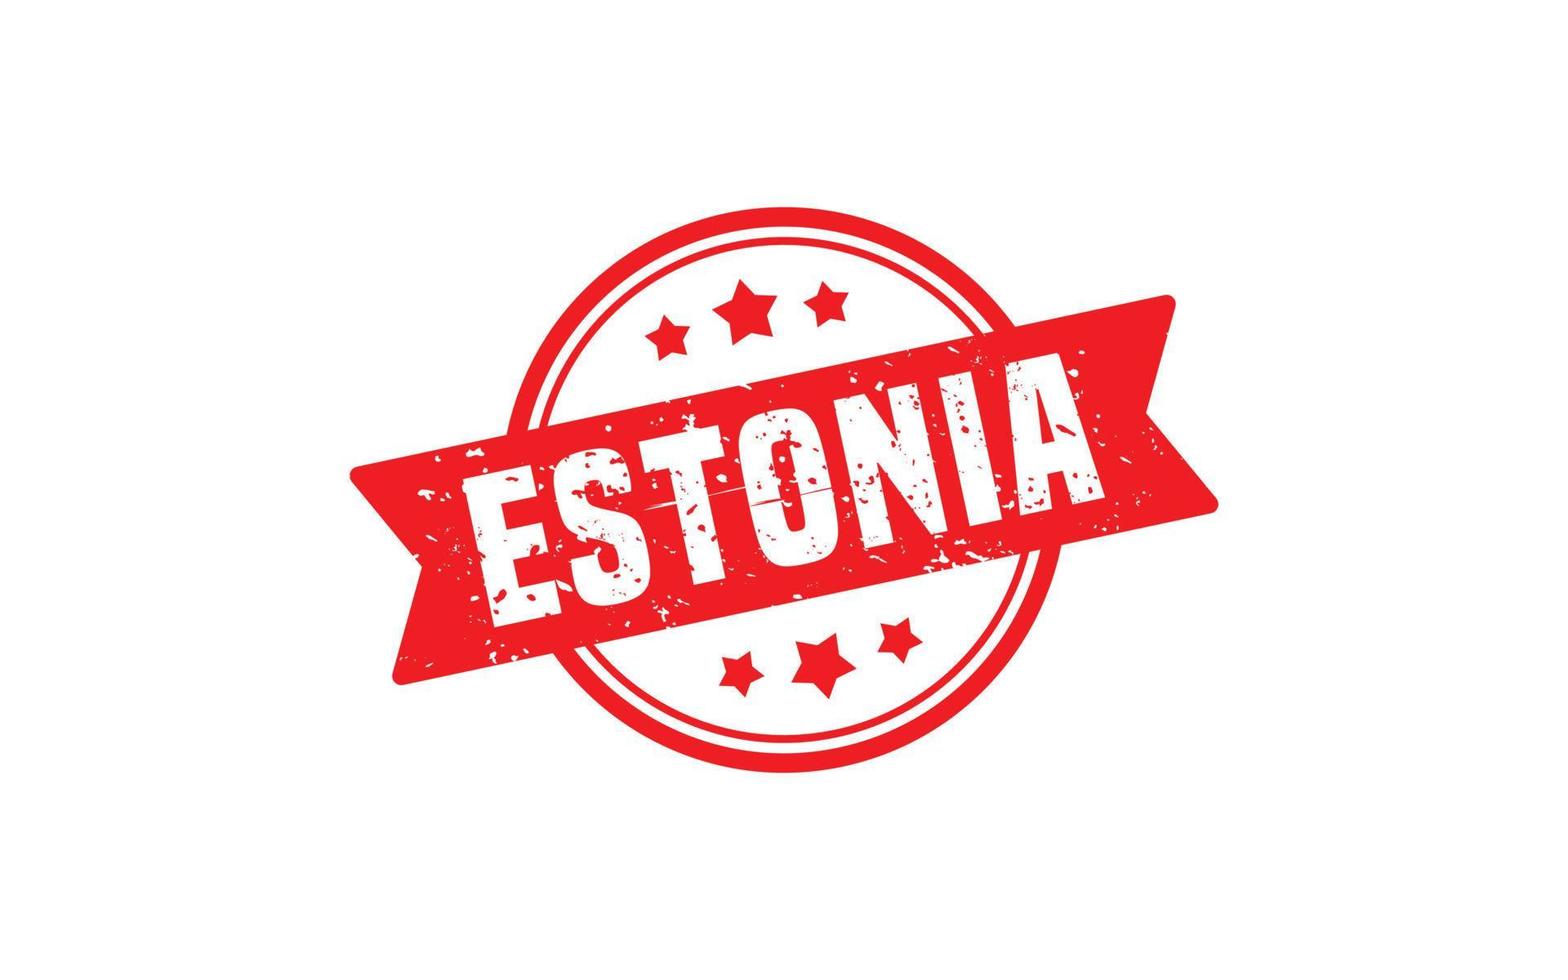 goma de sello de estonia con estilo grunge sobre fondo blanco vector